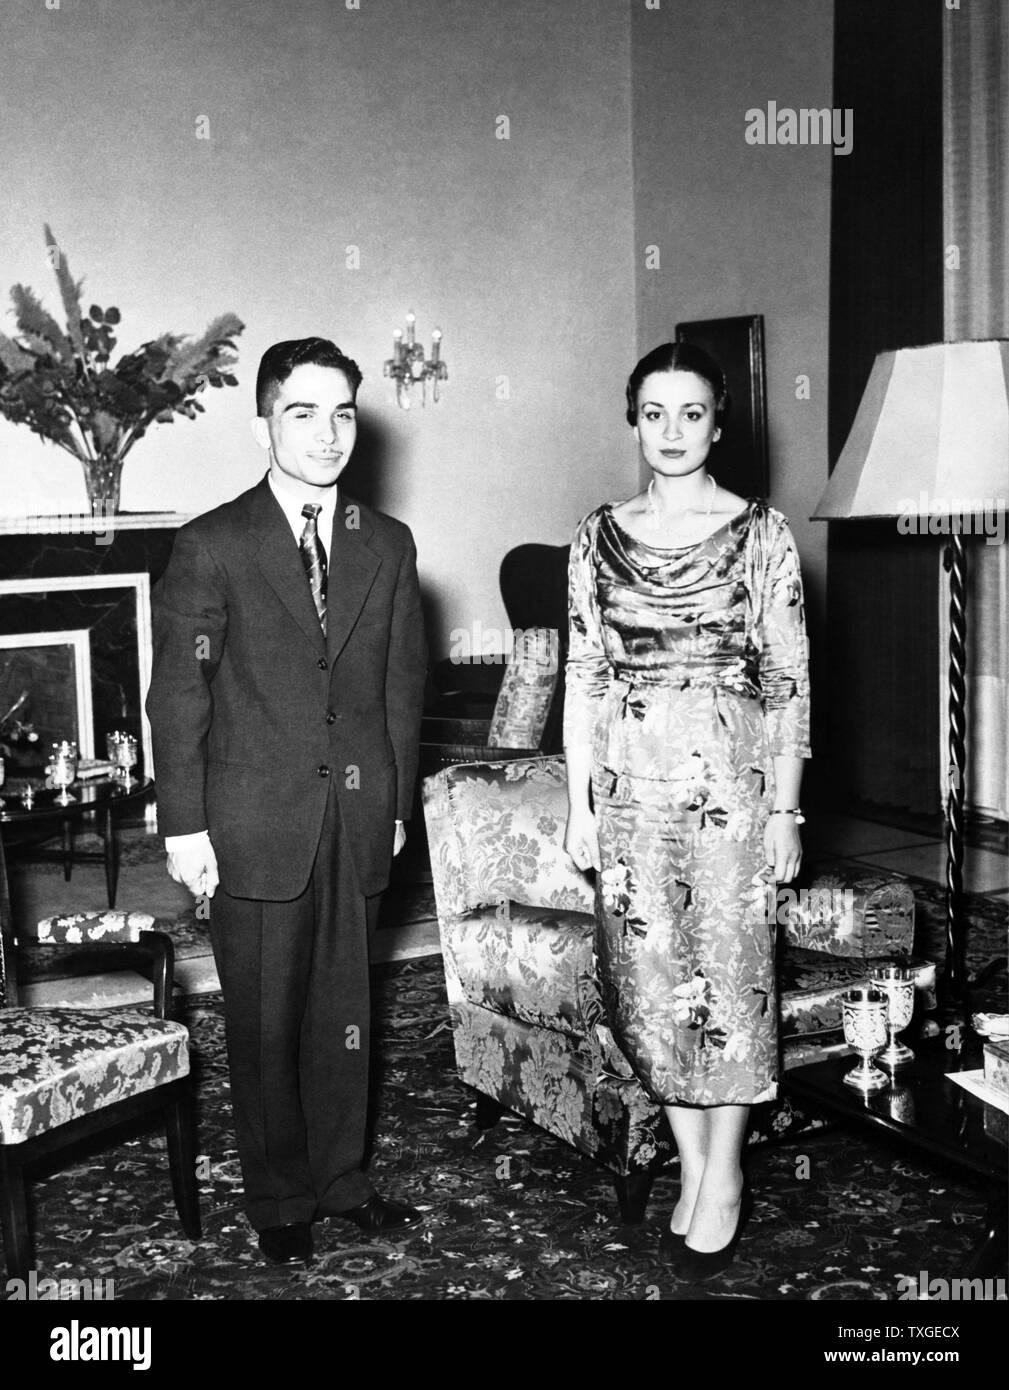 Pre-Wedding photographie du Roi Hussein de Jordanie et la Princesse Dina bint 'Abdul-Hamid. Datée 1955 Banque D'Images